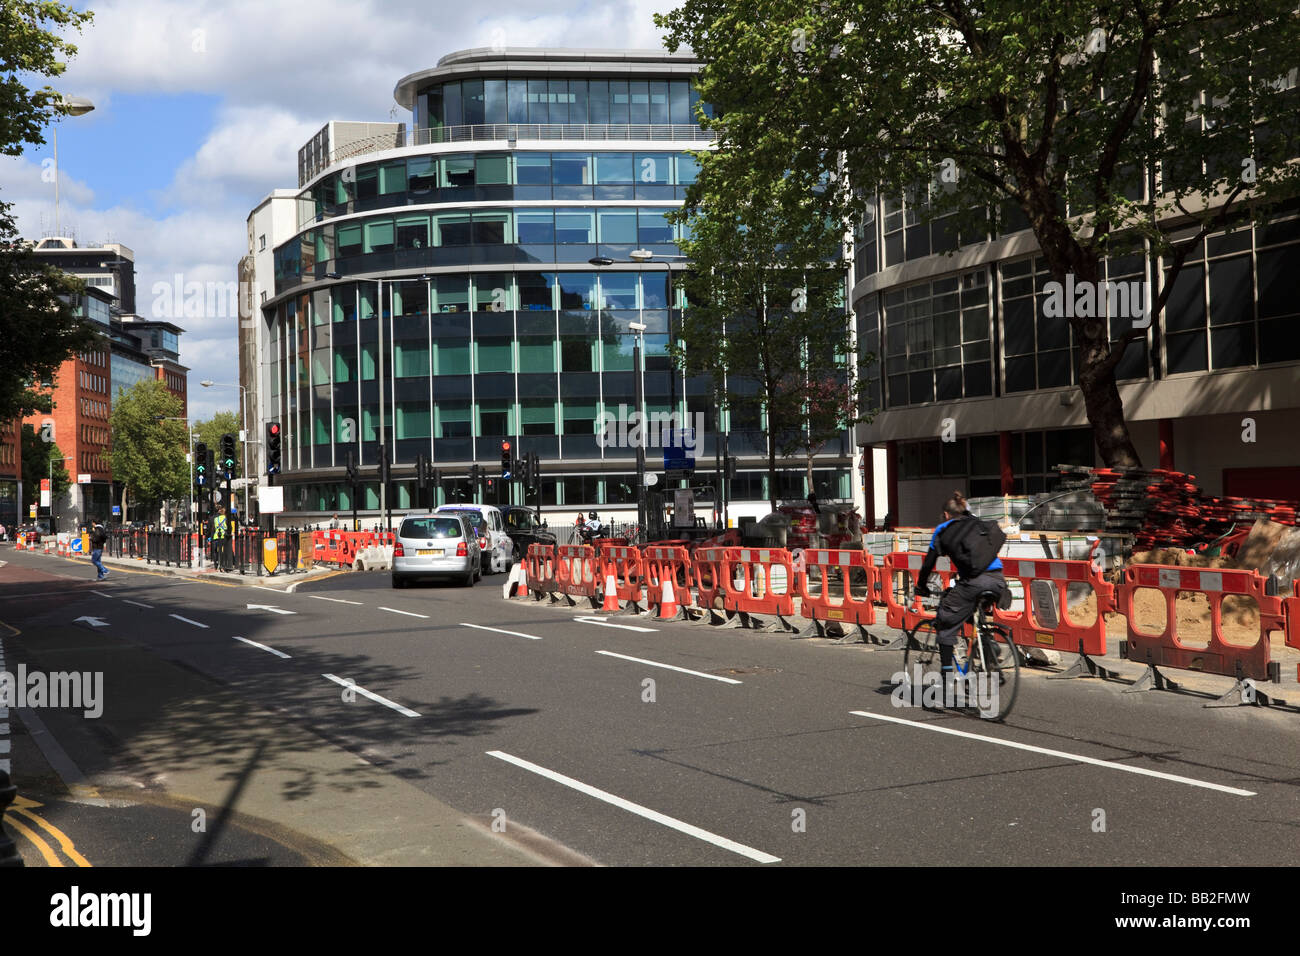 Travaux sur la route de jonction Theobald Streed et St Drakes avec passage des cyclistes, Bloomsbury, London, UK Banque D'Images